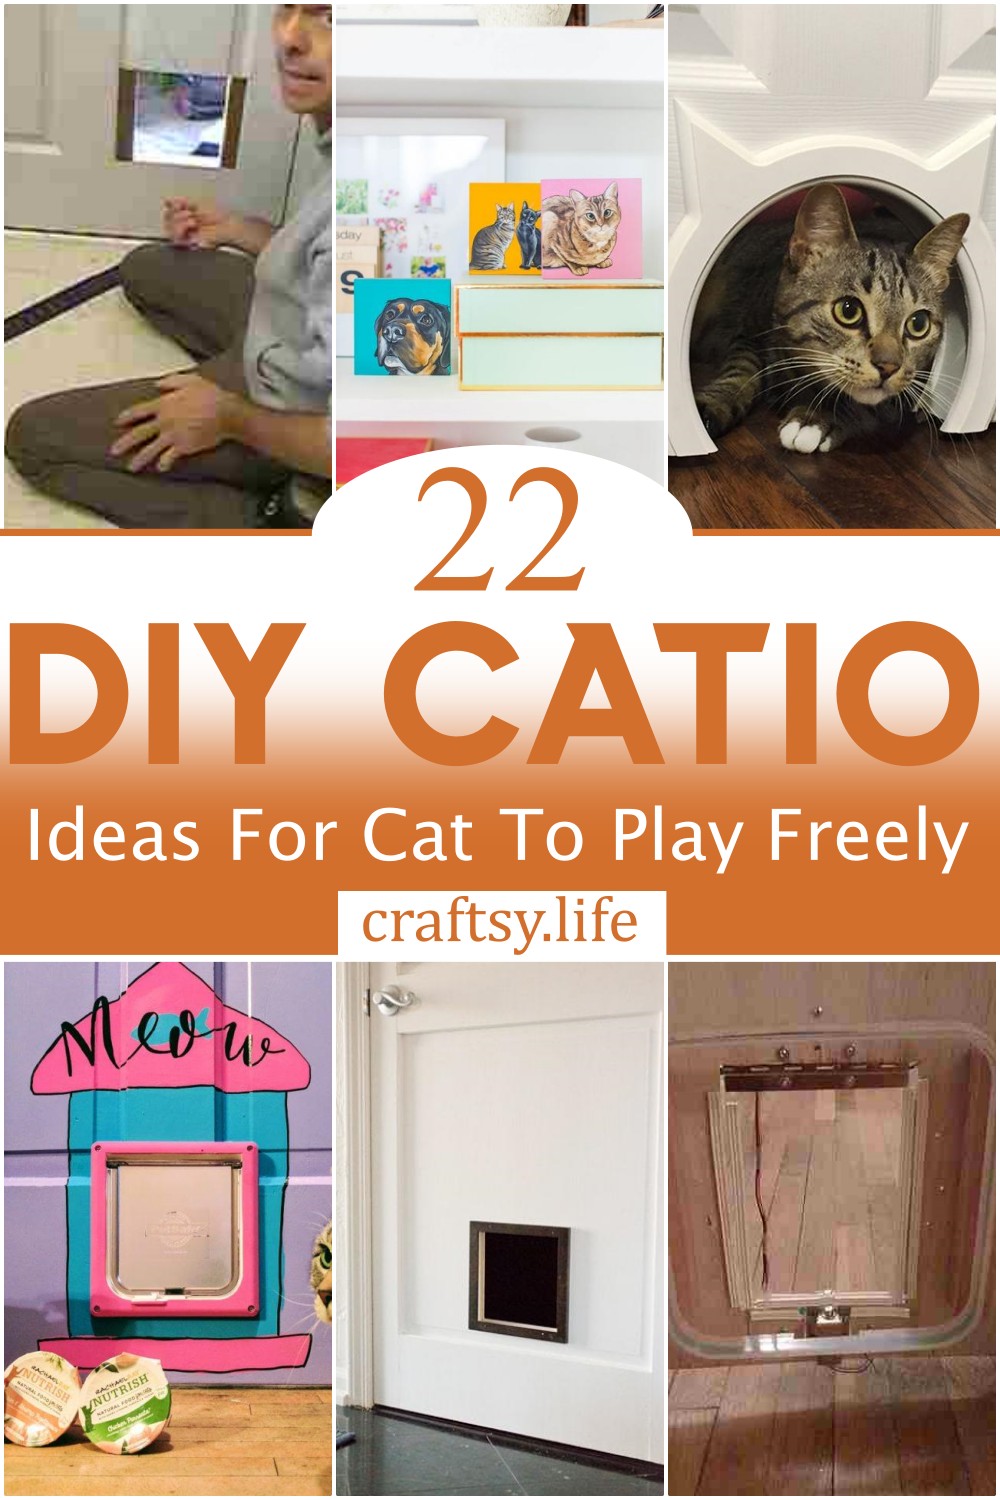 DIY Catio Ideas